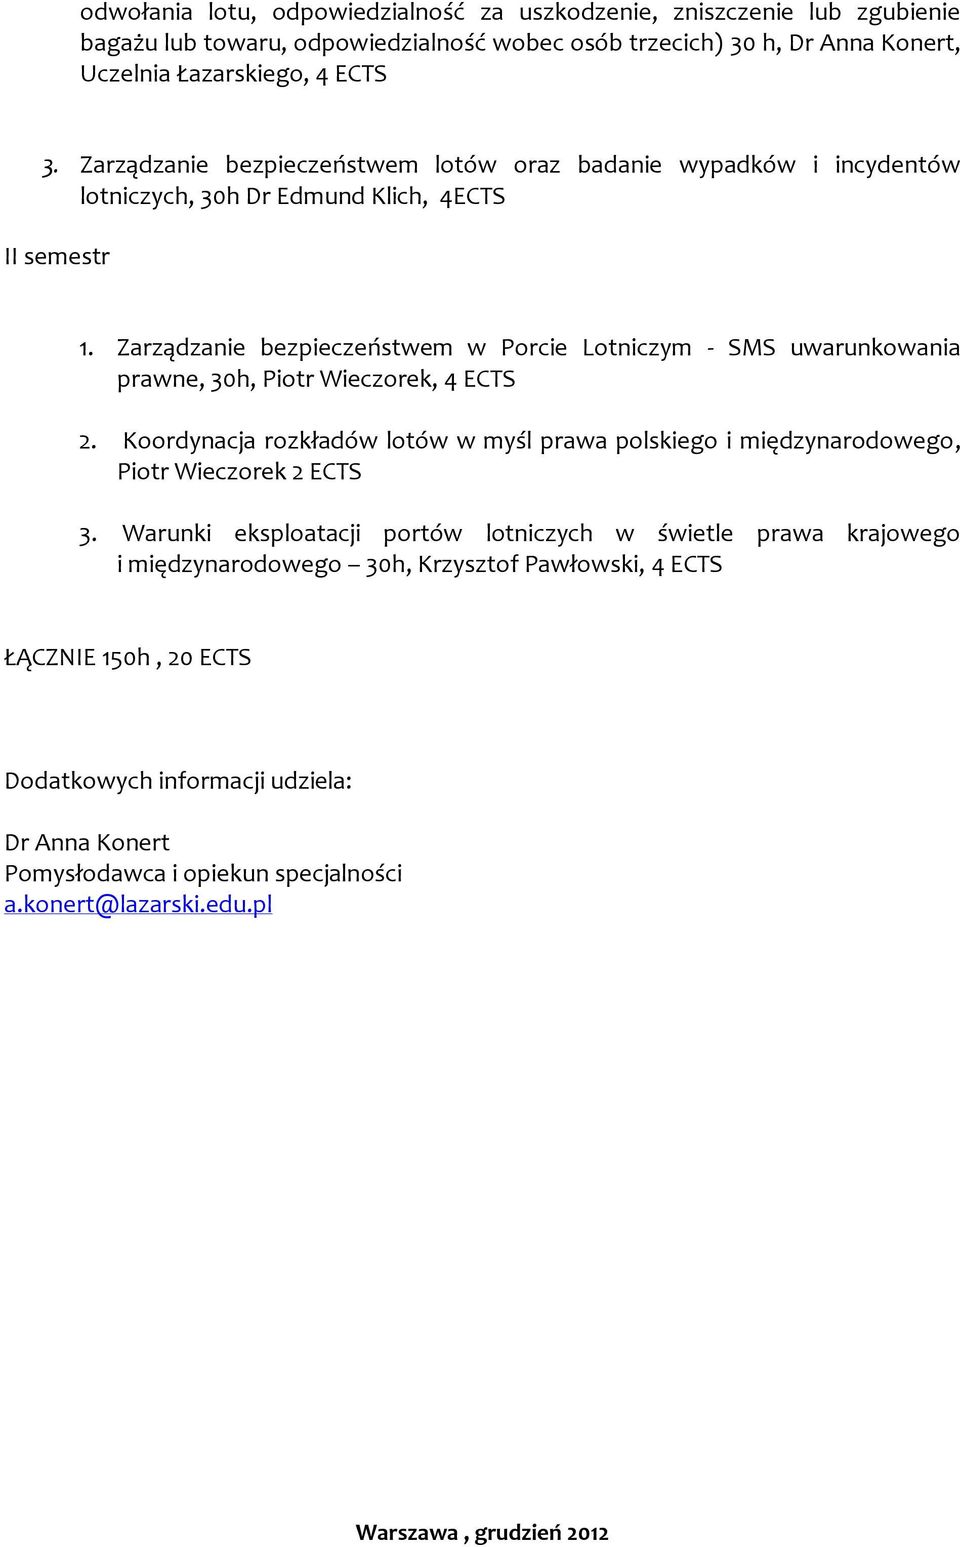 Zarządzanie bezpieczeństwem w Porcie Lotniczym - SMS uwarunkowania prawne, 30h, Piotr Wieczorek, 4 ECTS 2.